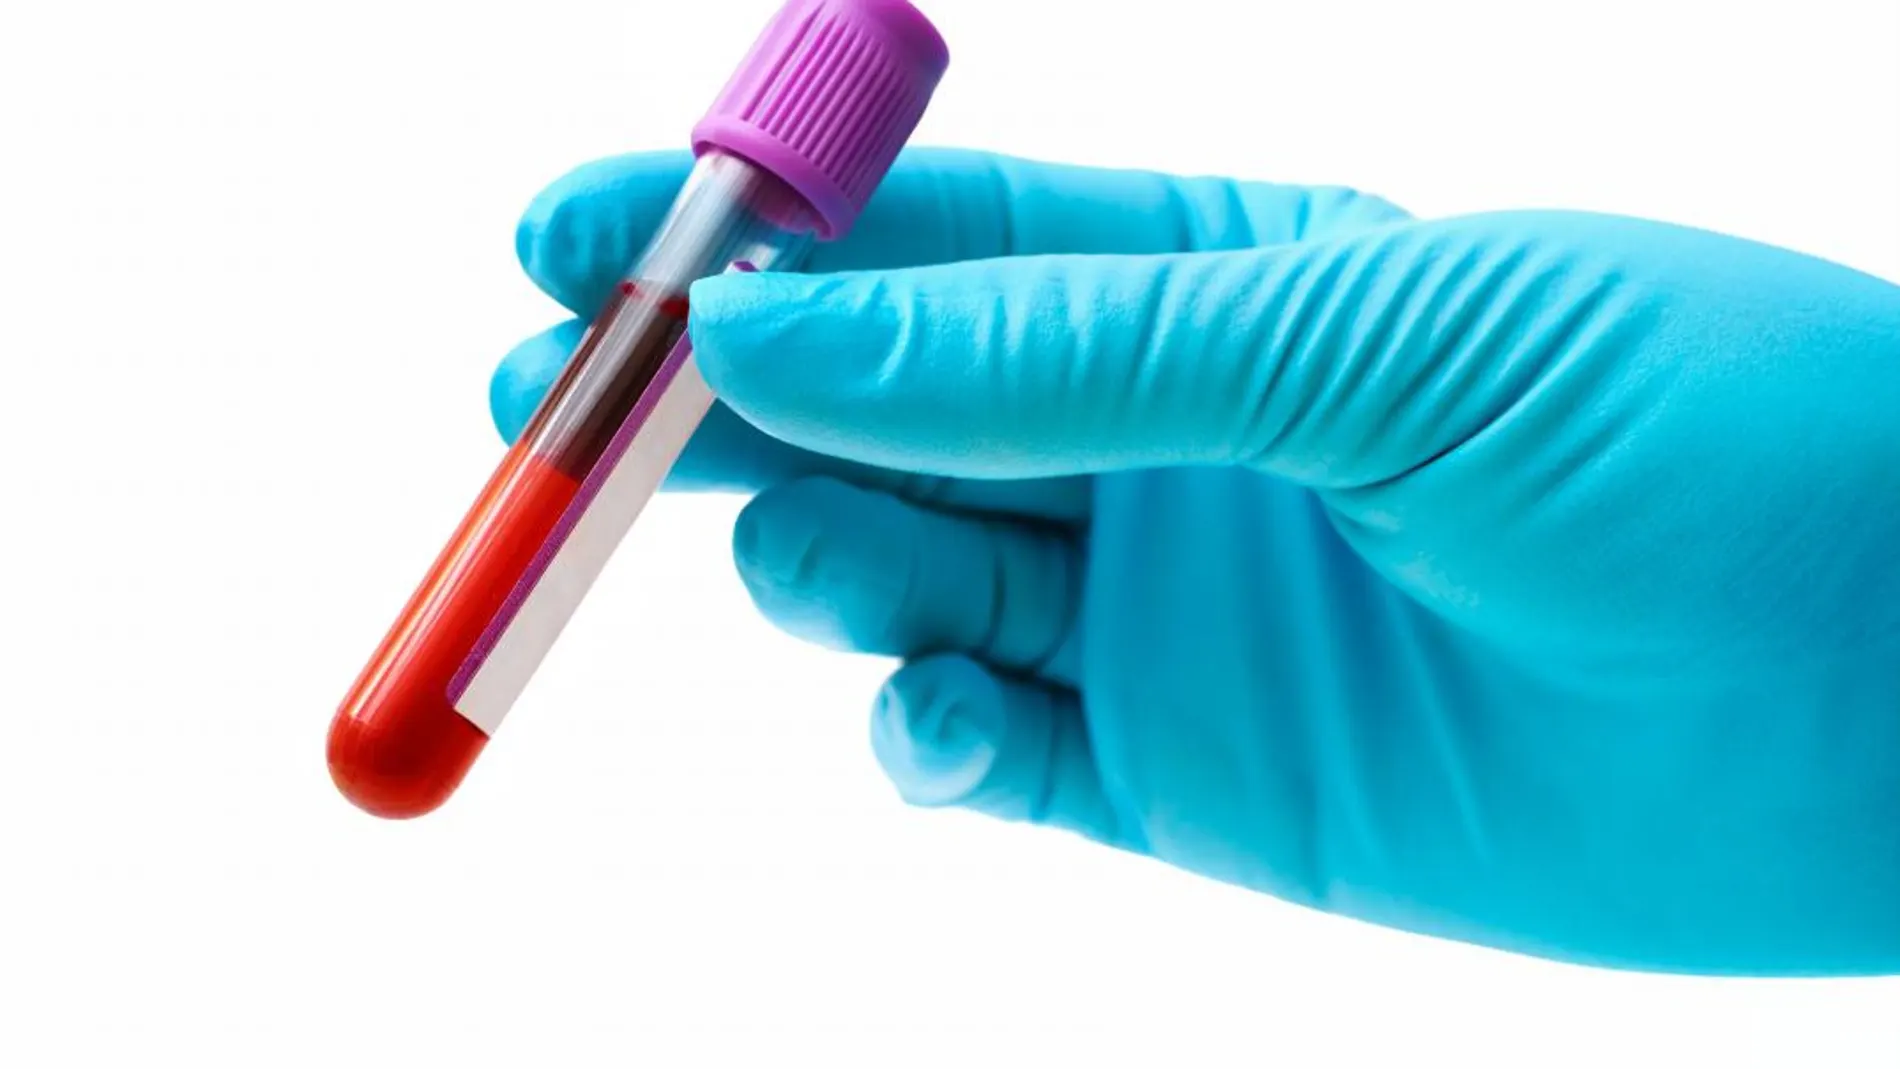 Crean un test de sangre capaz de detectar de forma temprana 8 tipos de cáncer